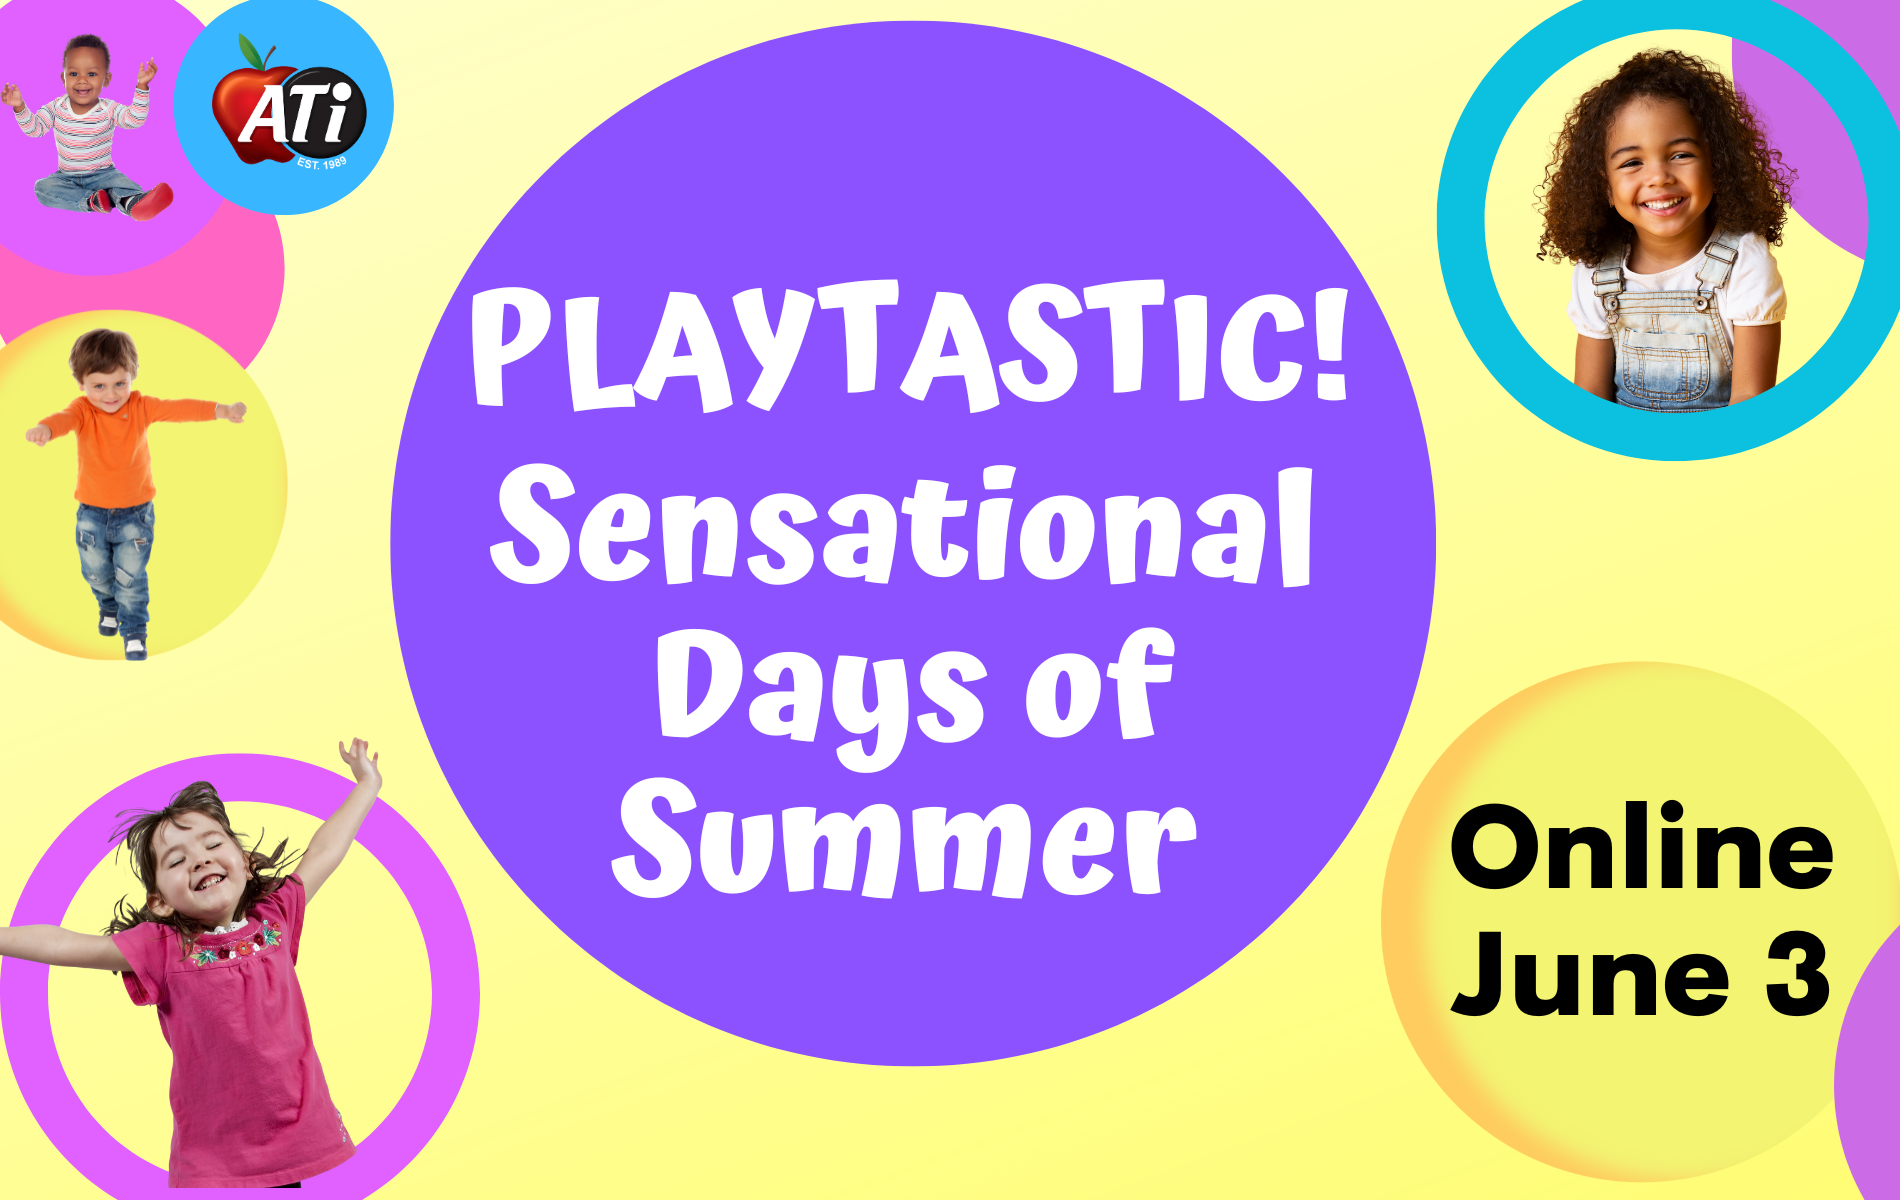 Image for Playtastic! Sensational Days of Summer - Online